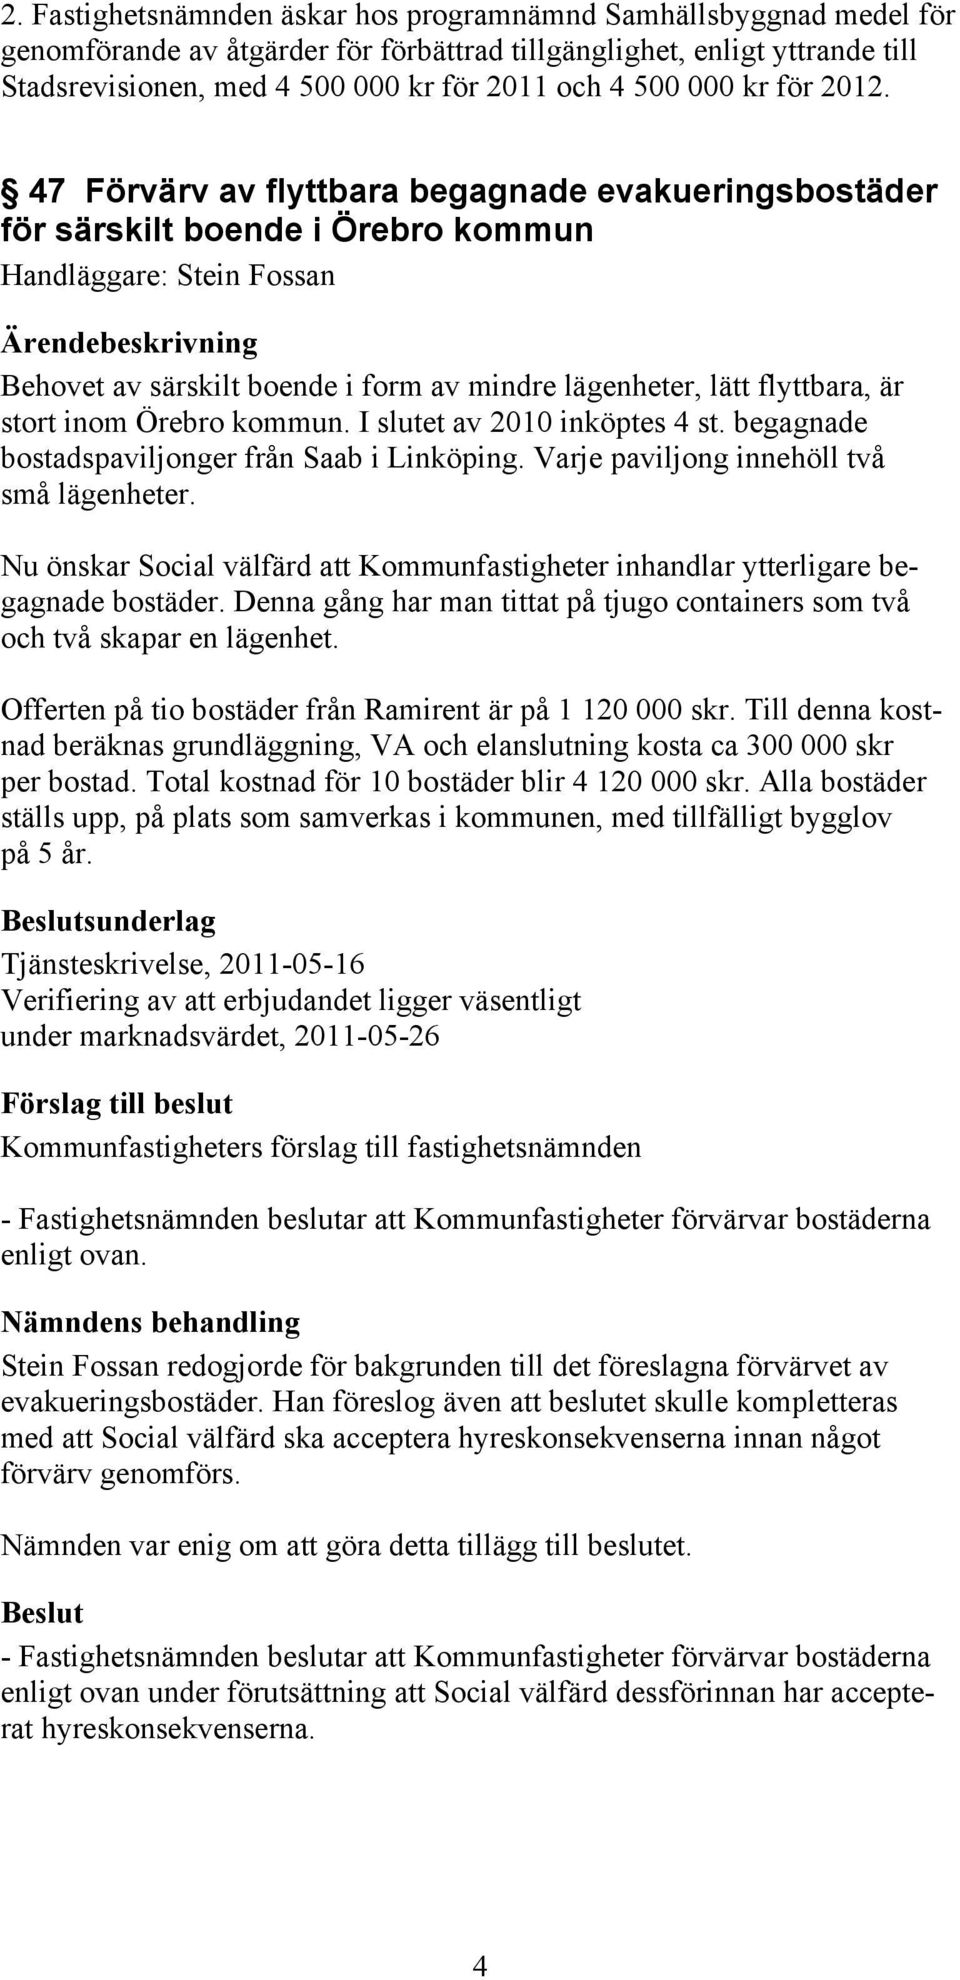 47 Förvärv av flyttbara begagnade evakueringsbostäder för särskilt boende i Örebro kommun Handläggare: Stein Fossan Behovet av särskilt boende i form av mindre lägenheter, lätt flyttbara, är stort